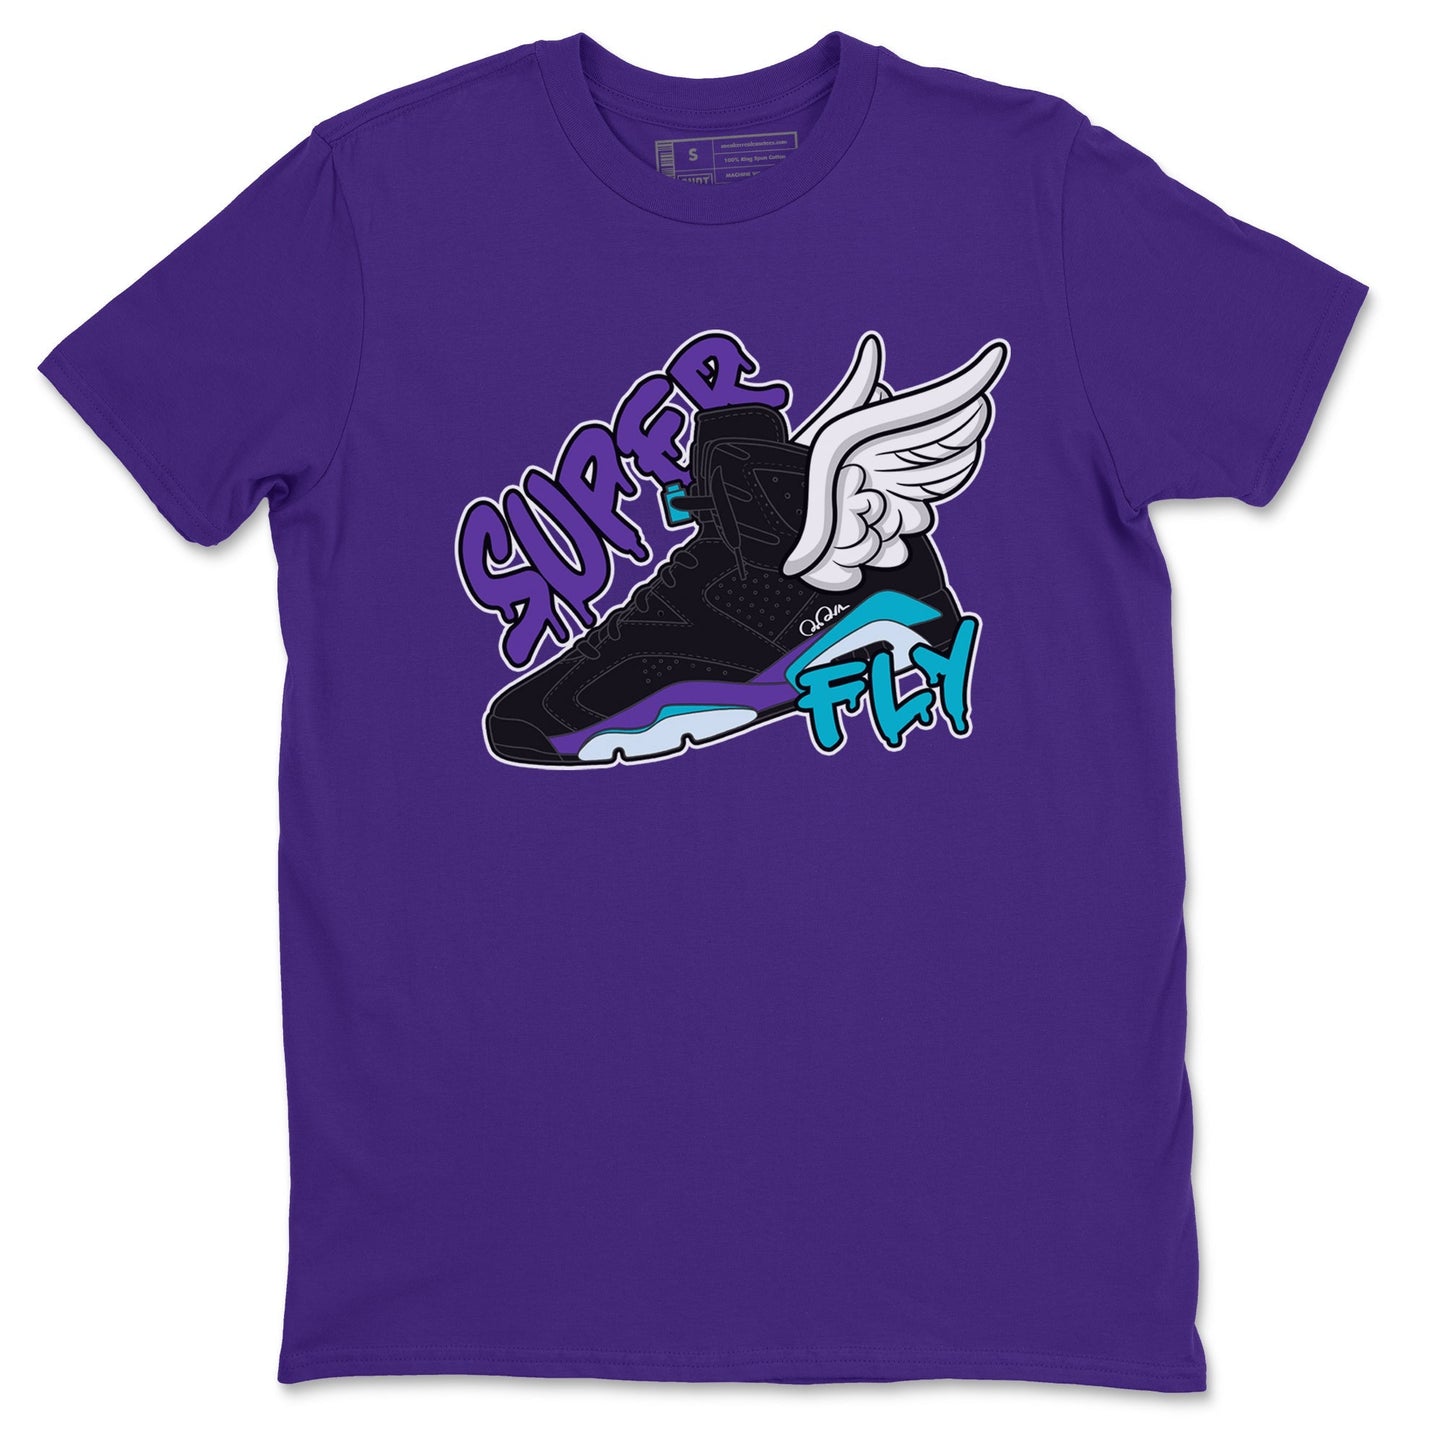 Air Jordan 6 Aqua Sneaker Match Tees Super Fly Sneaker Tees AJ6 Aqua Sneaker Release Tees Unisex Shirts Purple 2